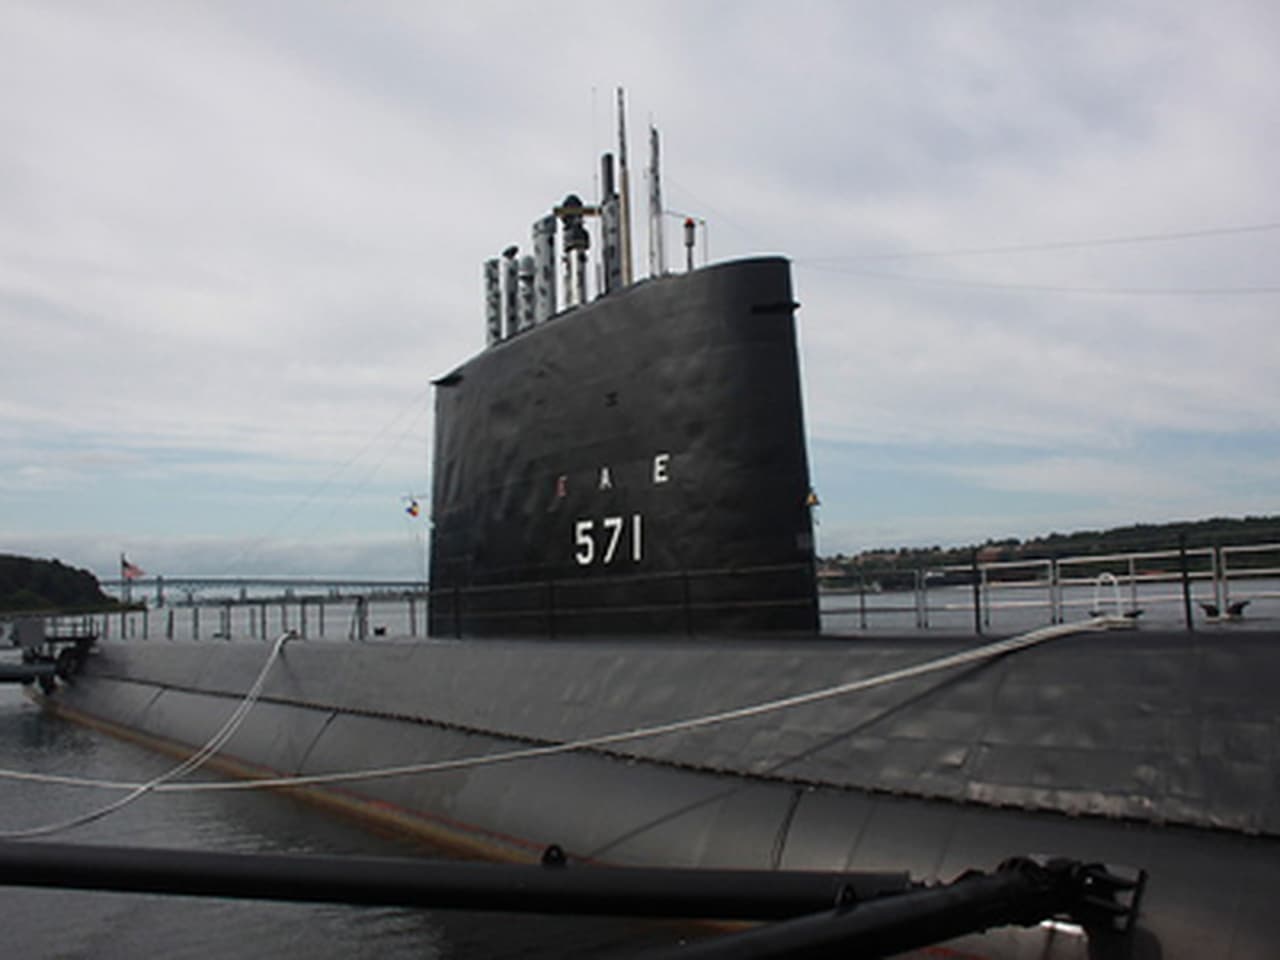 USS Nautilus